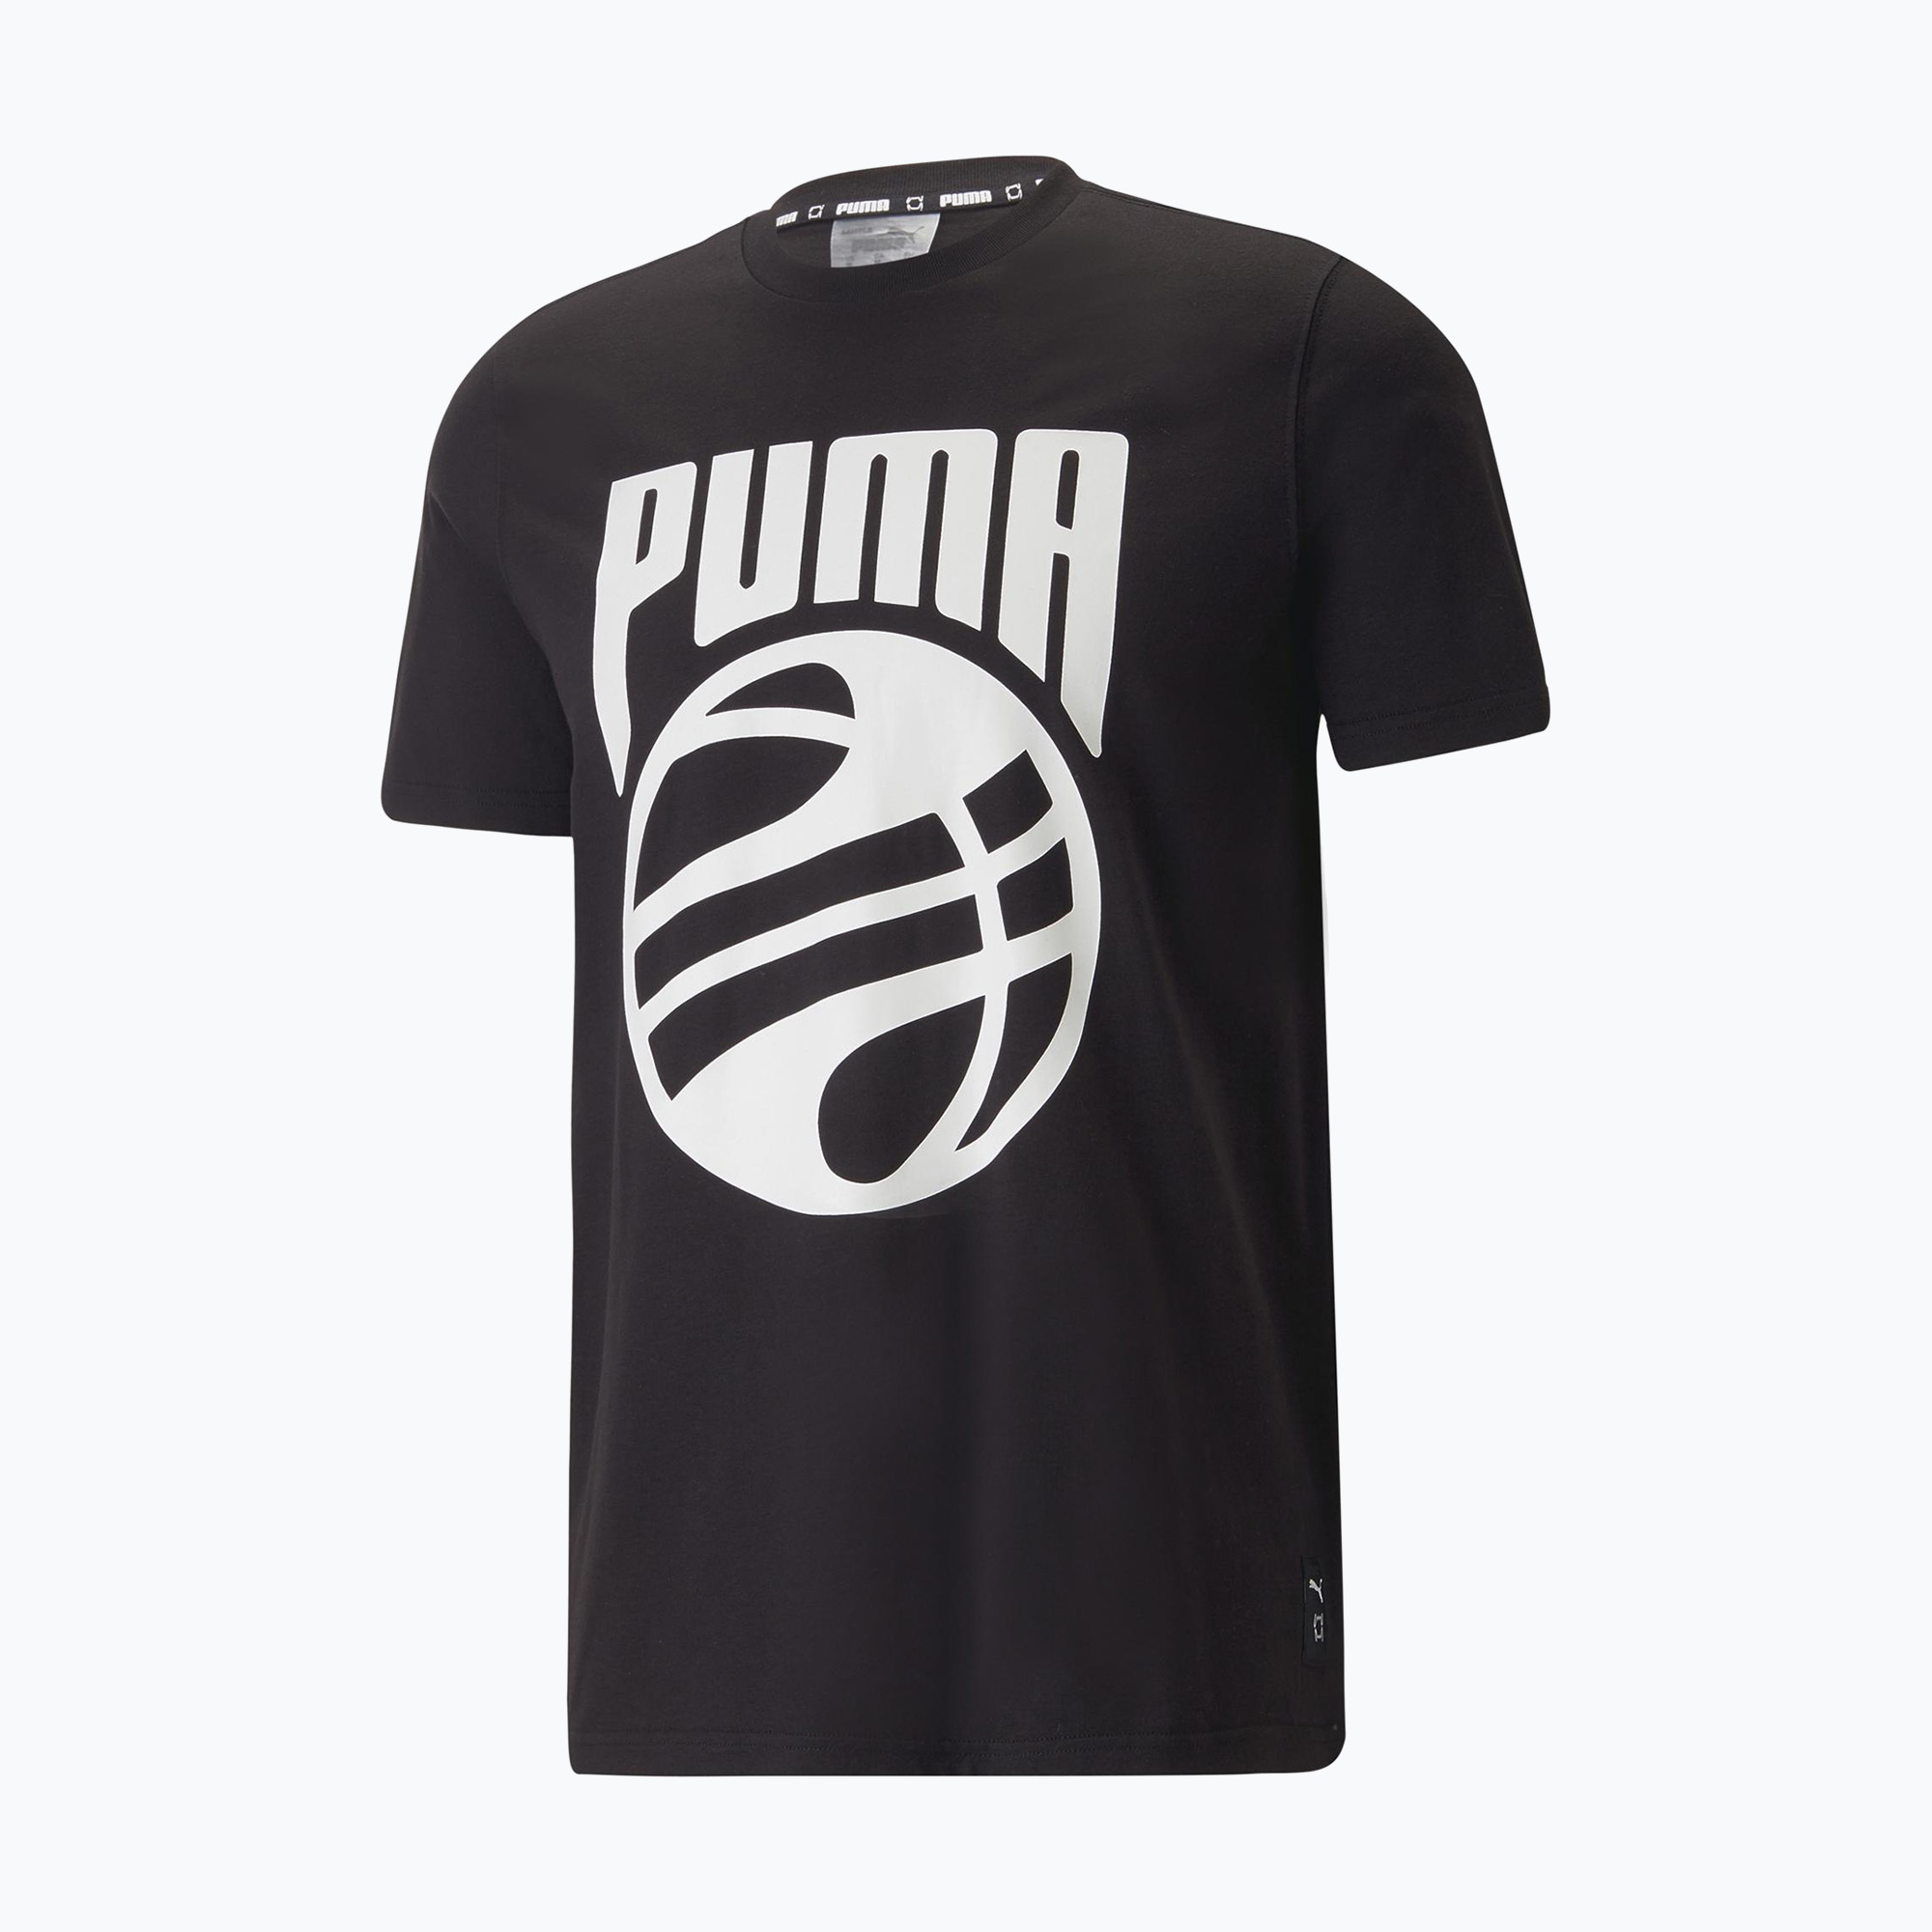 Pánsky basketbalový dres PUMA Posterize black 538598 01